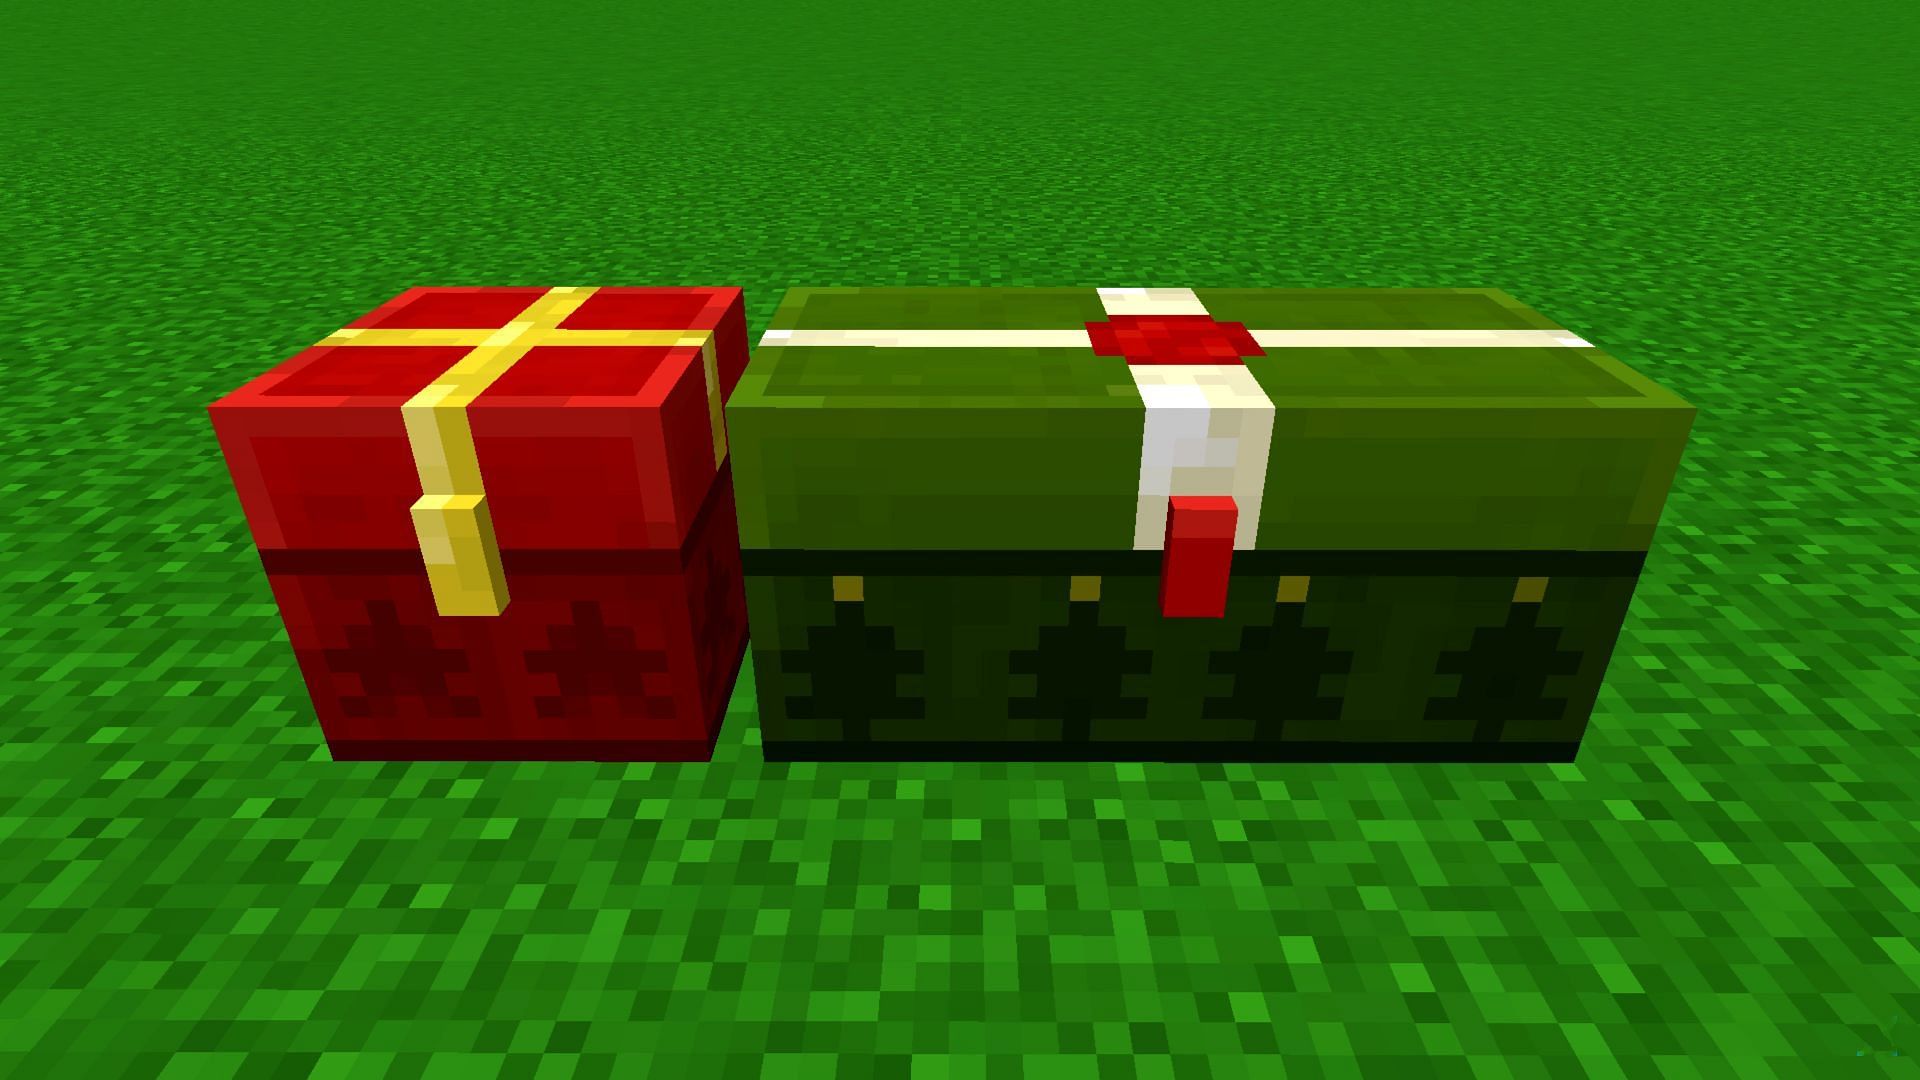 Les petits coffres ont un emballage rouge, tandis que les grands coffres ont un emballage vert (Image via Mojang)